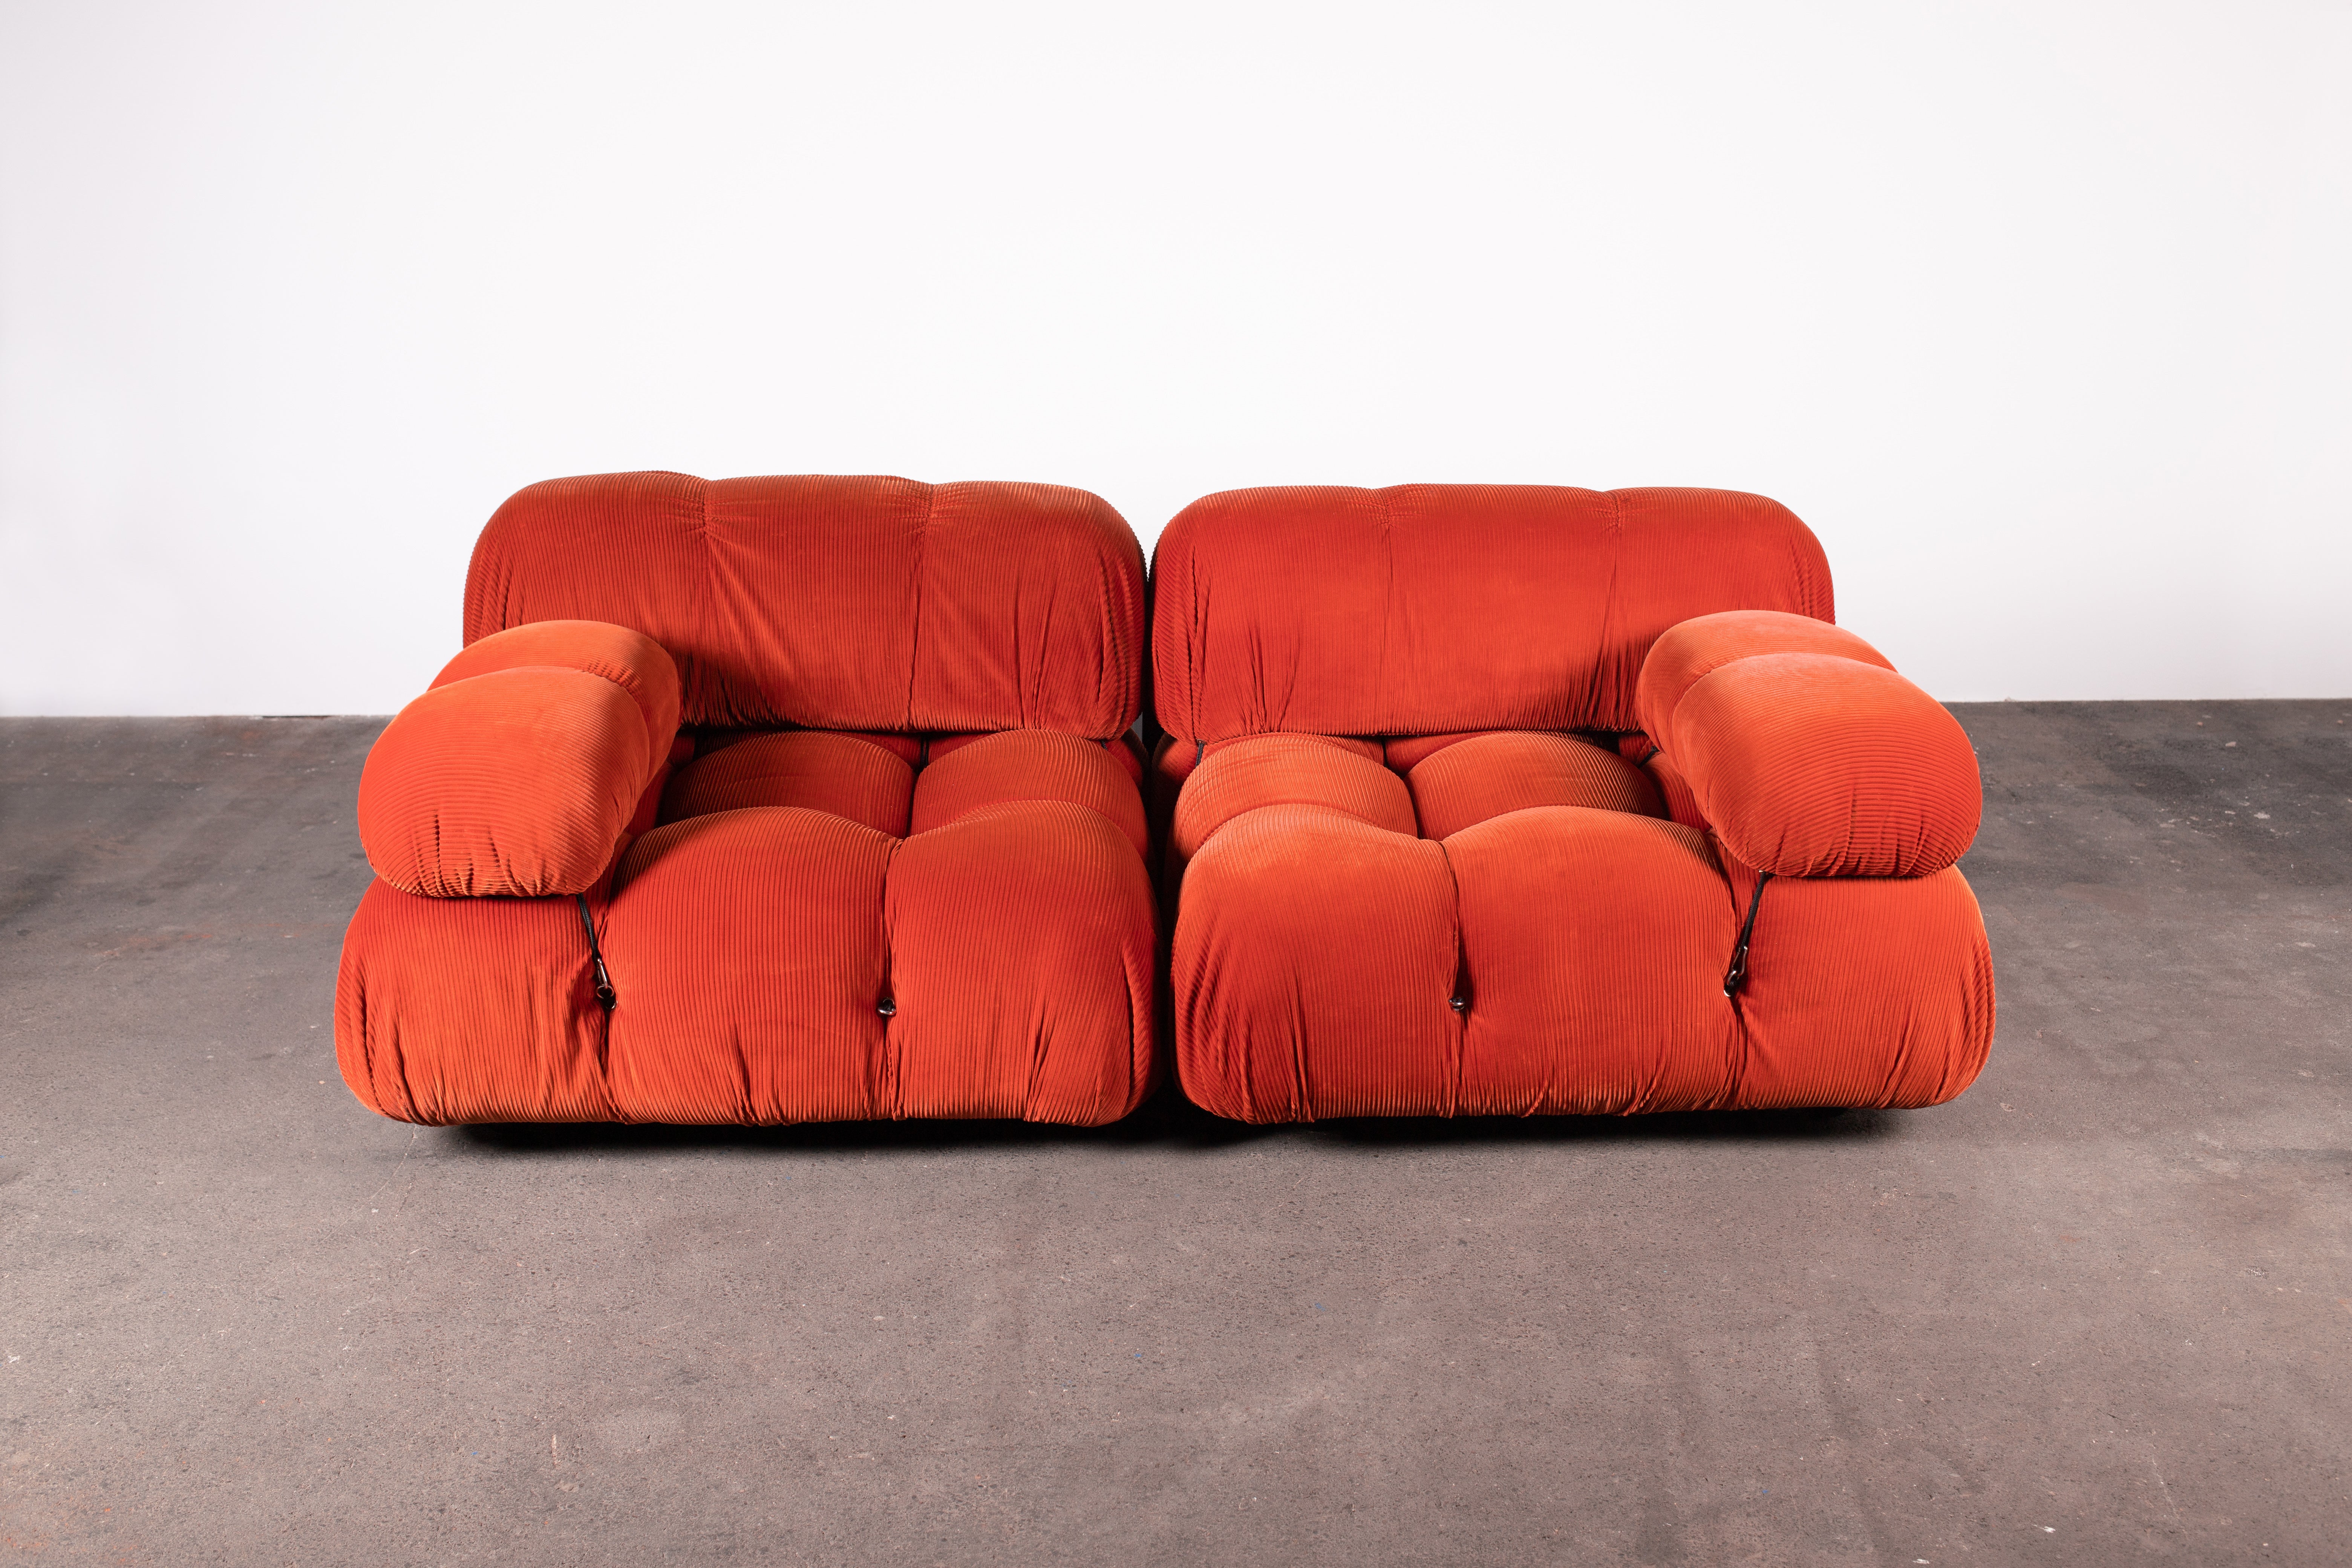 Original frühes B&B Italia Organic Modern 2-teiliges Camaleonda Sektionssofa von Mario Bellini in orangefarbenem Cordstoff. Besteht aus zwei Sesseln im größten 3x3-Format der Serie. Beide haben Rückenlehnen und eine Armlehne. Beistelltische sind